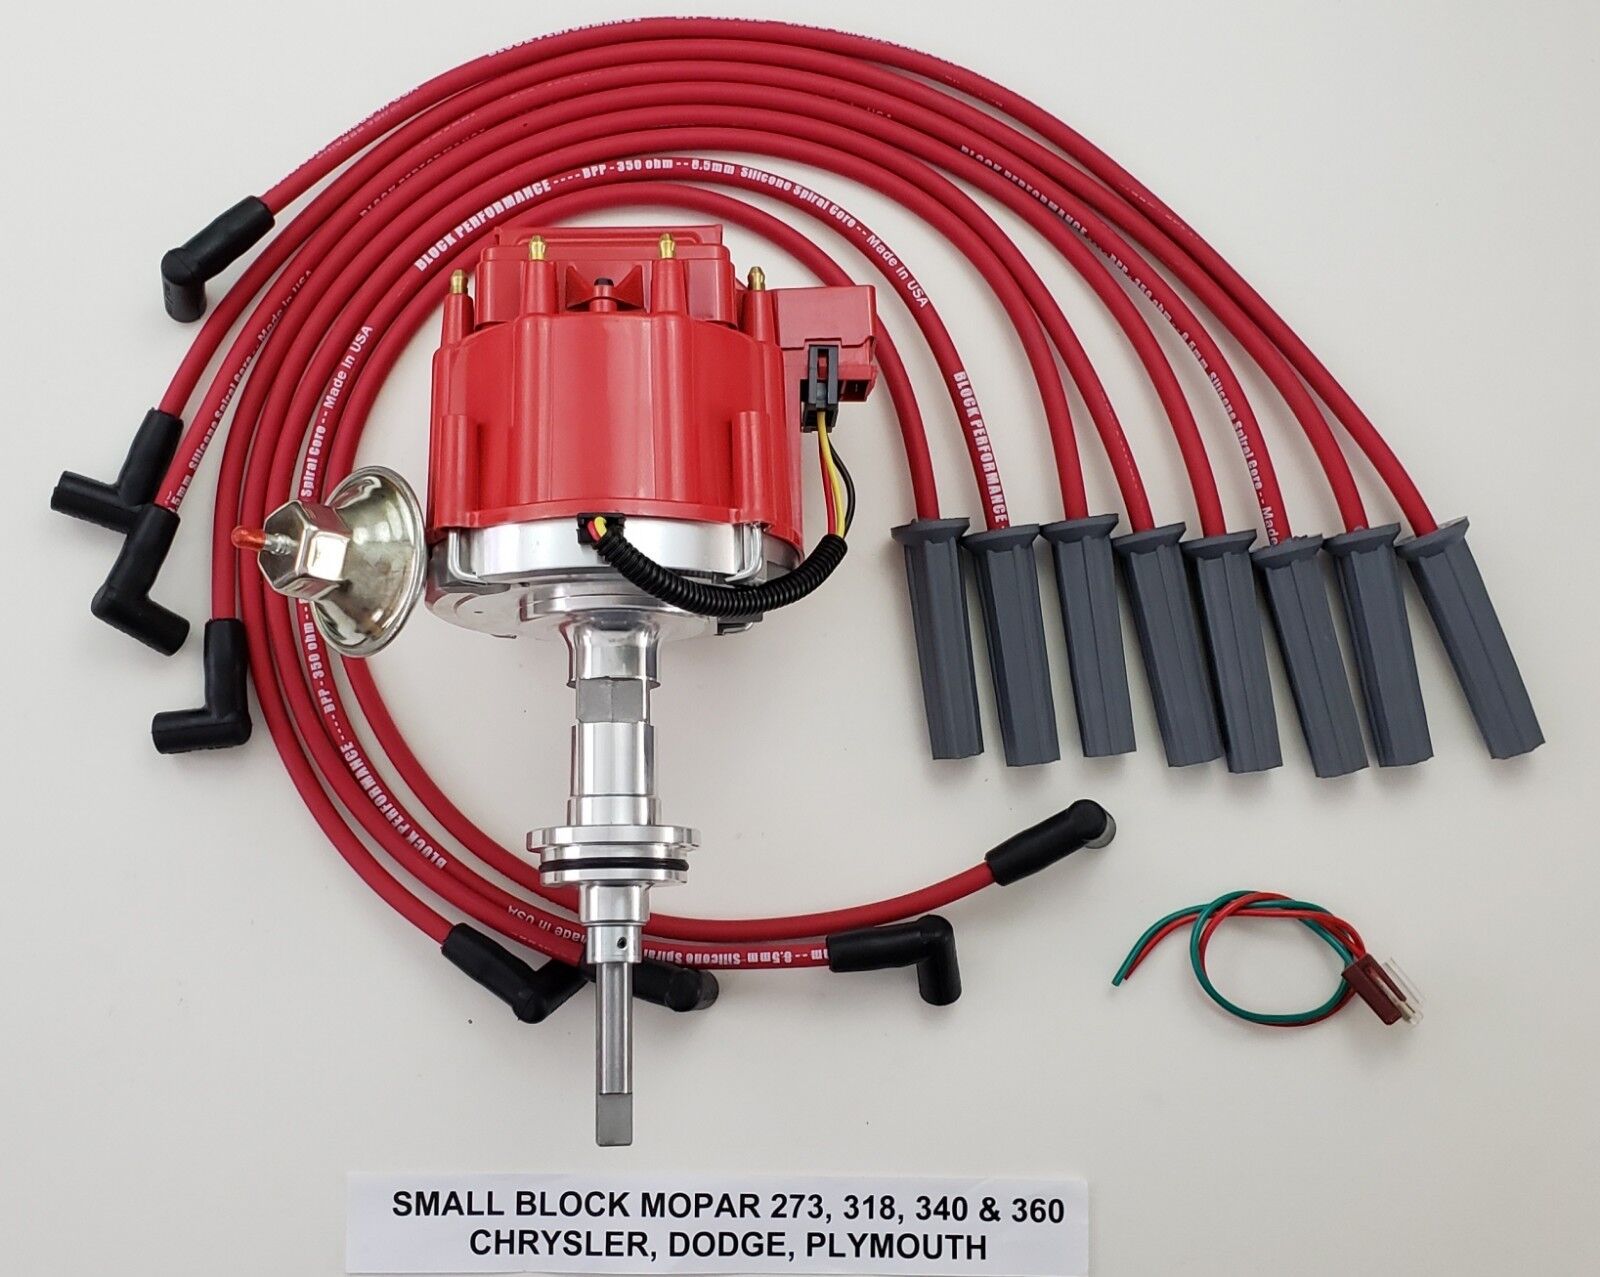 MOPAR 318 340 360 RED HEI DISTRIBUTOR +8.5mm SPARK PLUG WIRES USA DODGE CHRYSLER